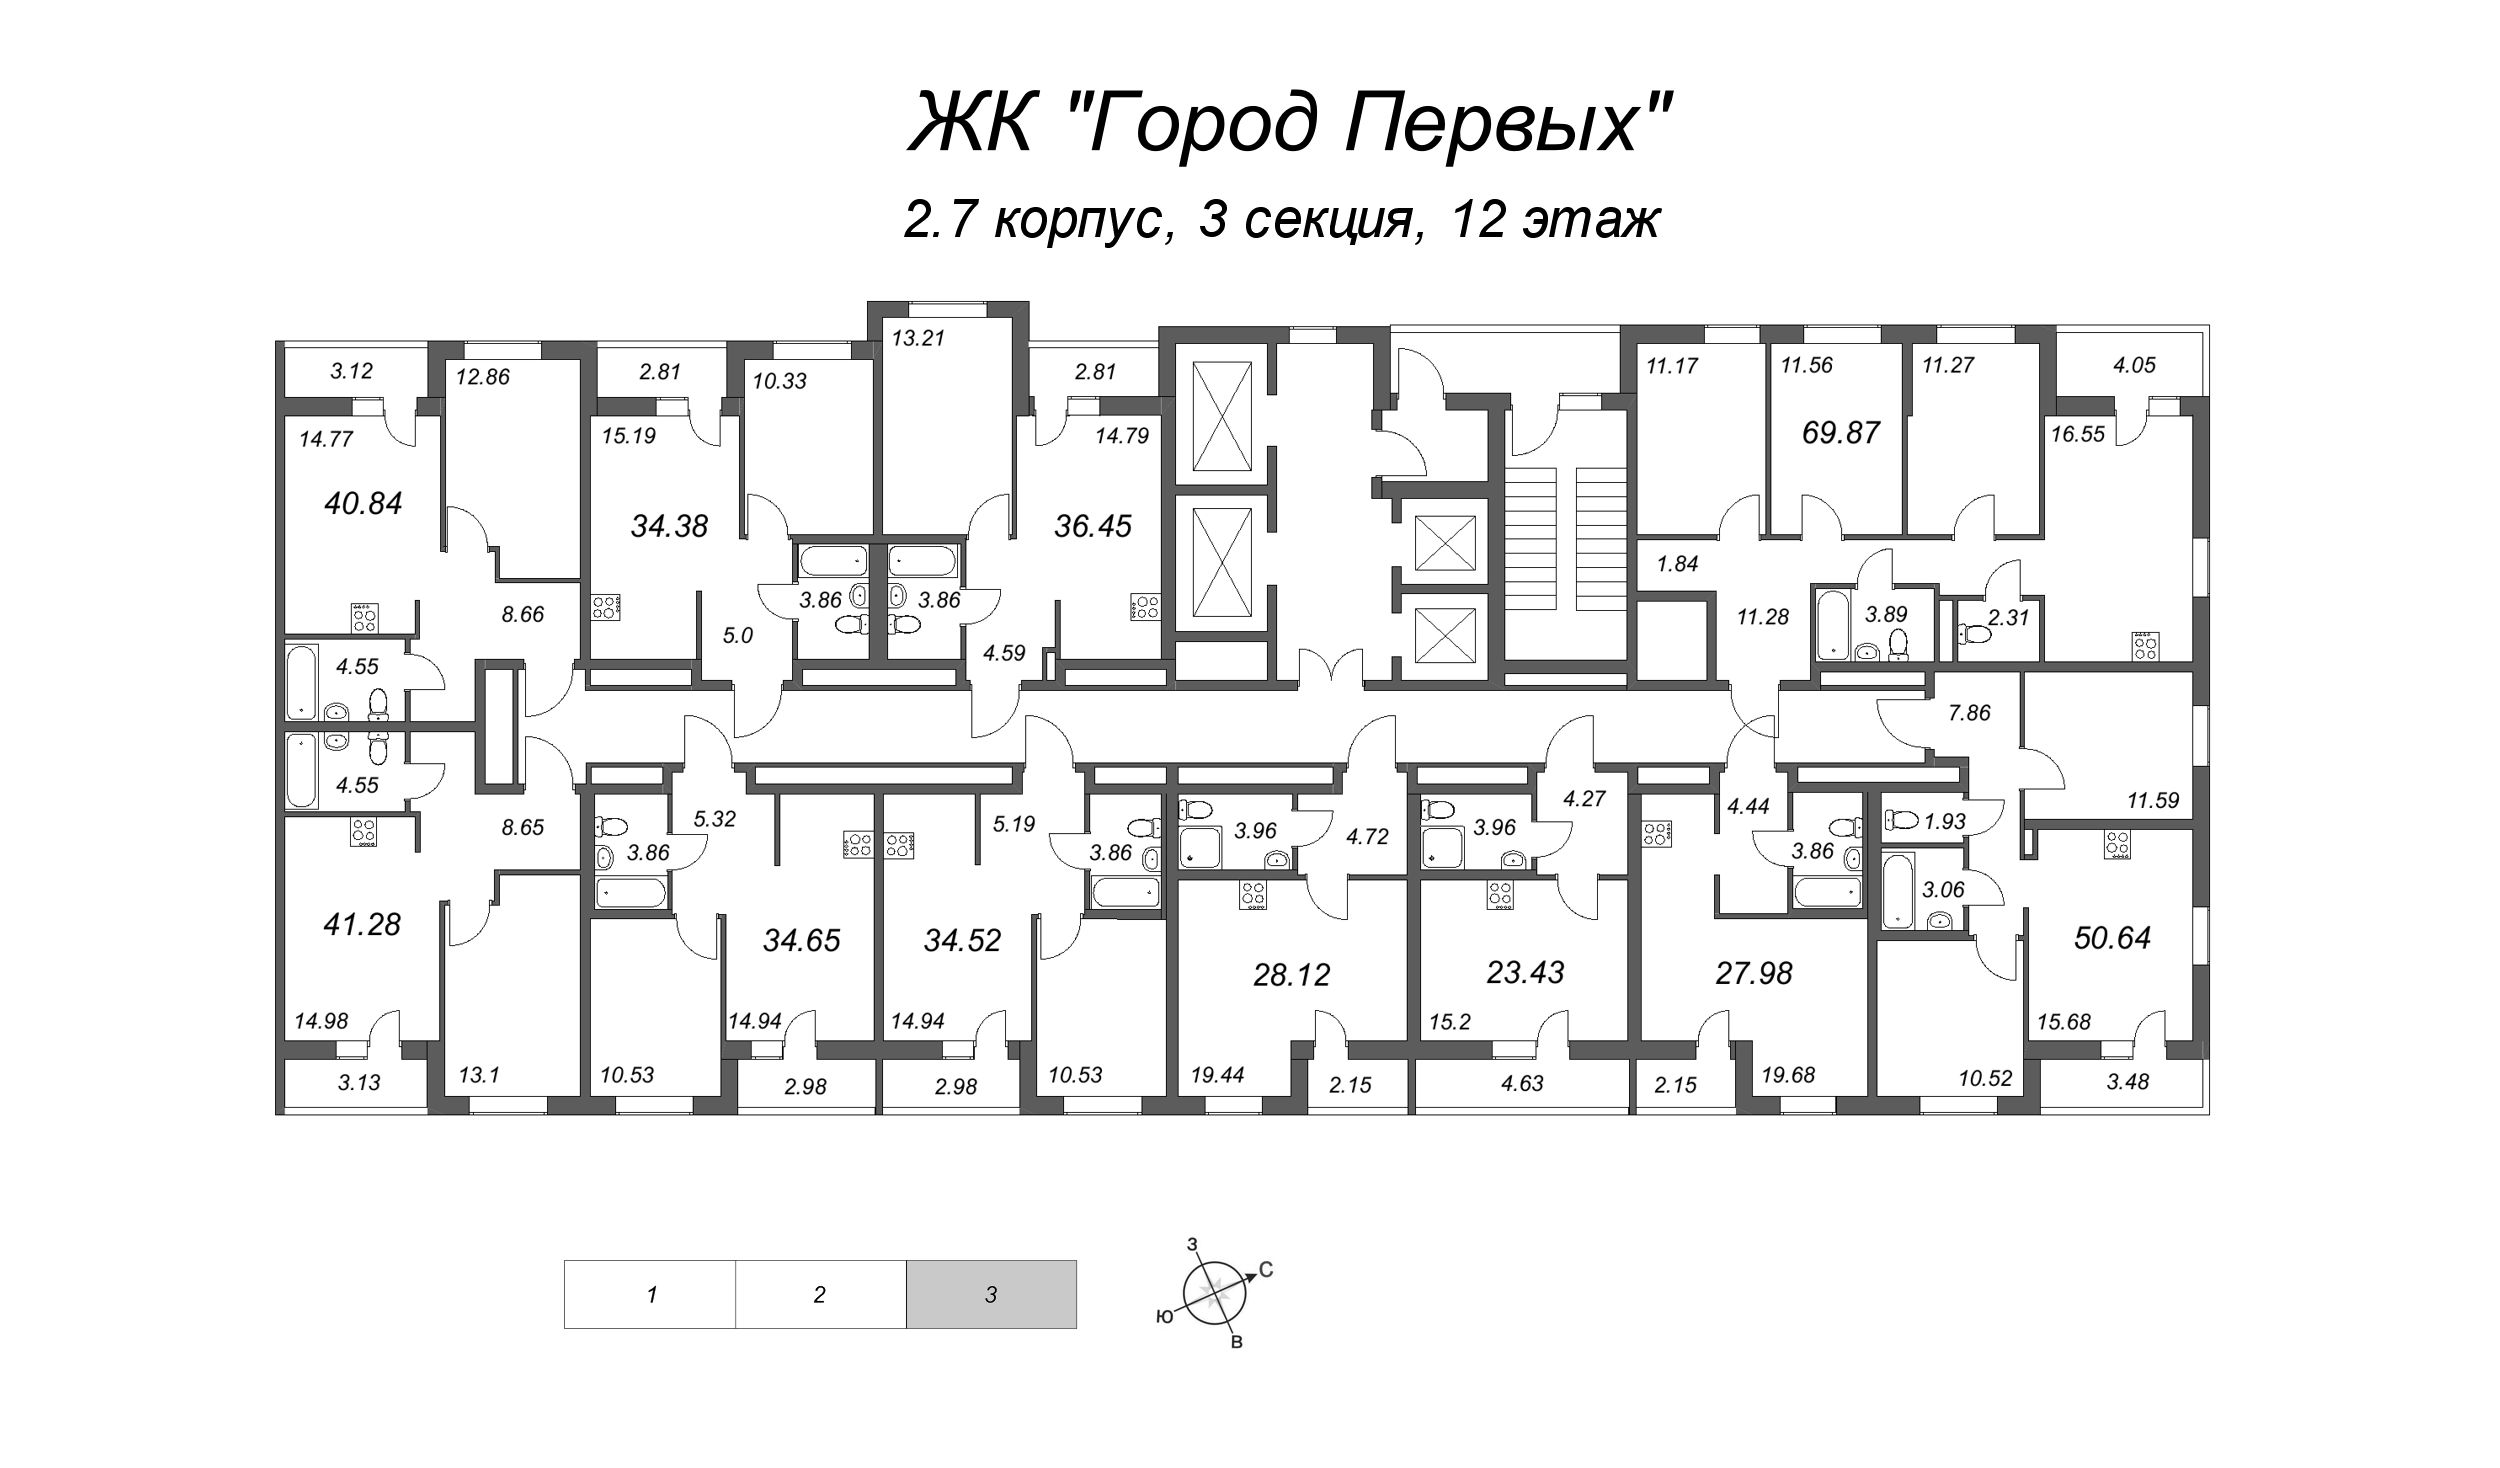 2-комнатная (Евро) квартира, 36.45 м² в ЖК "Город Первых" - планировка этажа